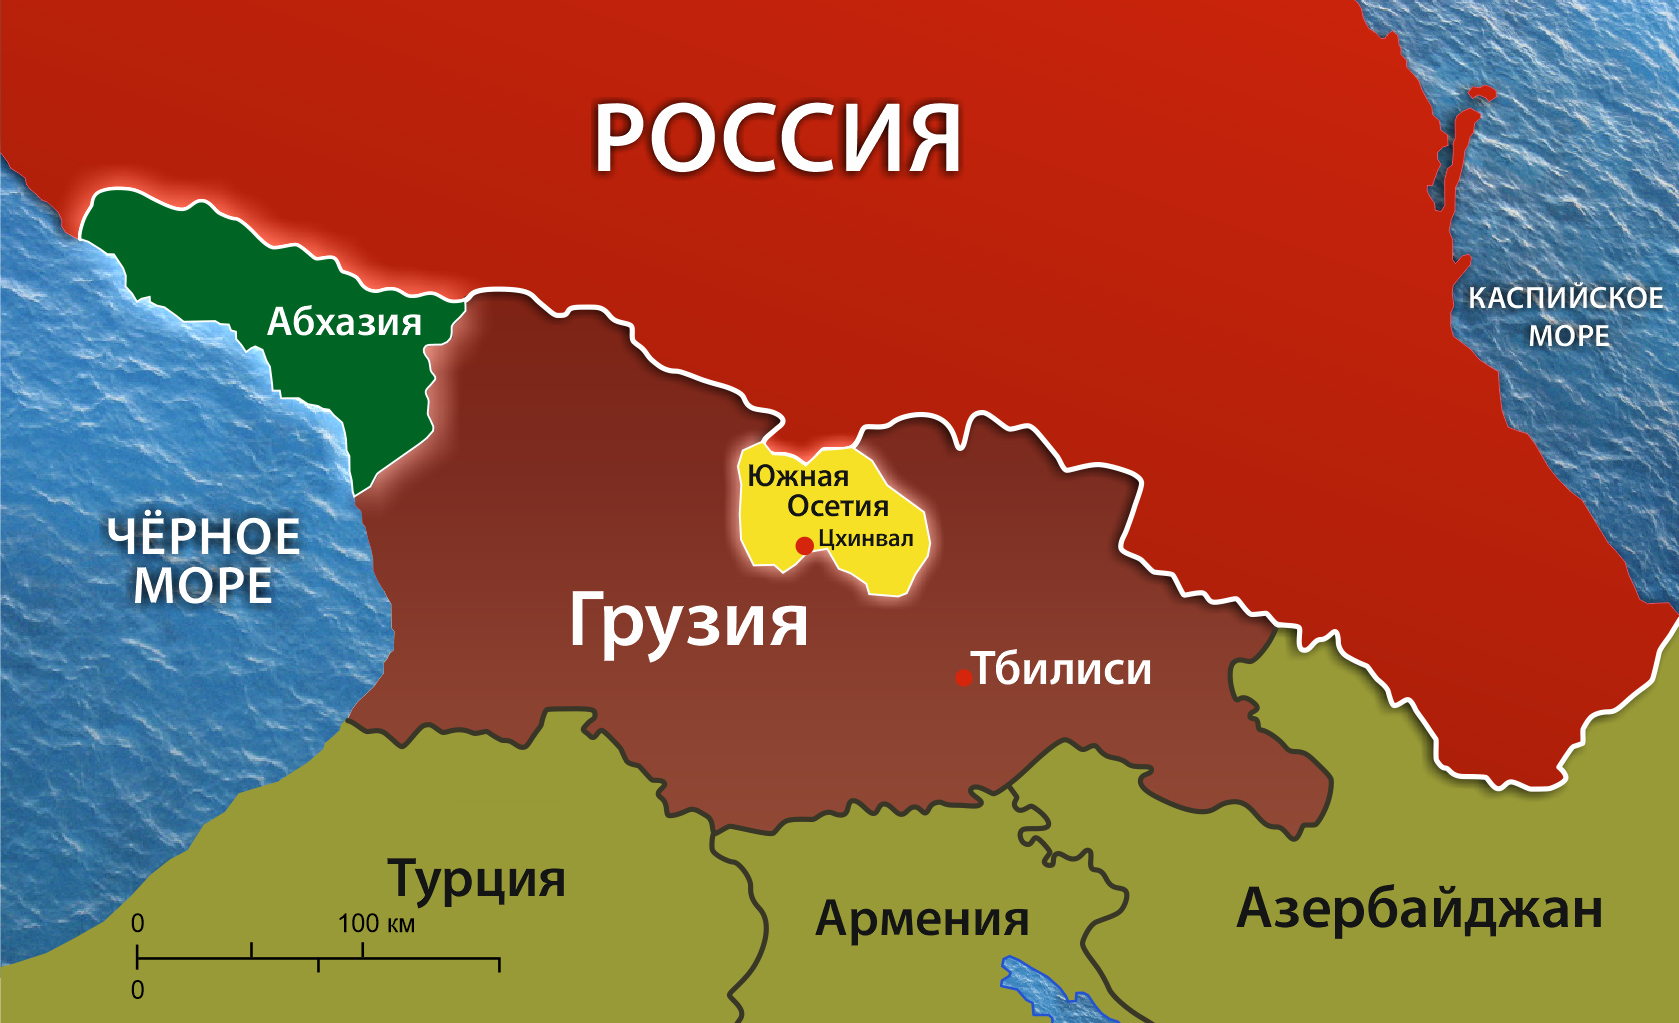 В парламенте Абхазии отреагировали на планы Южной Осетии войти в РФ - ИА REGNUM